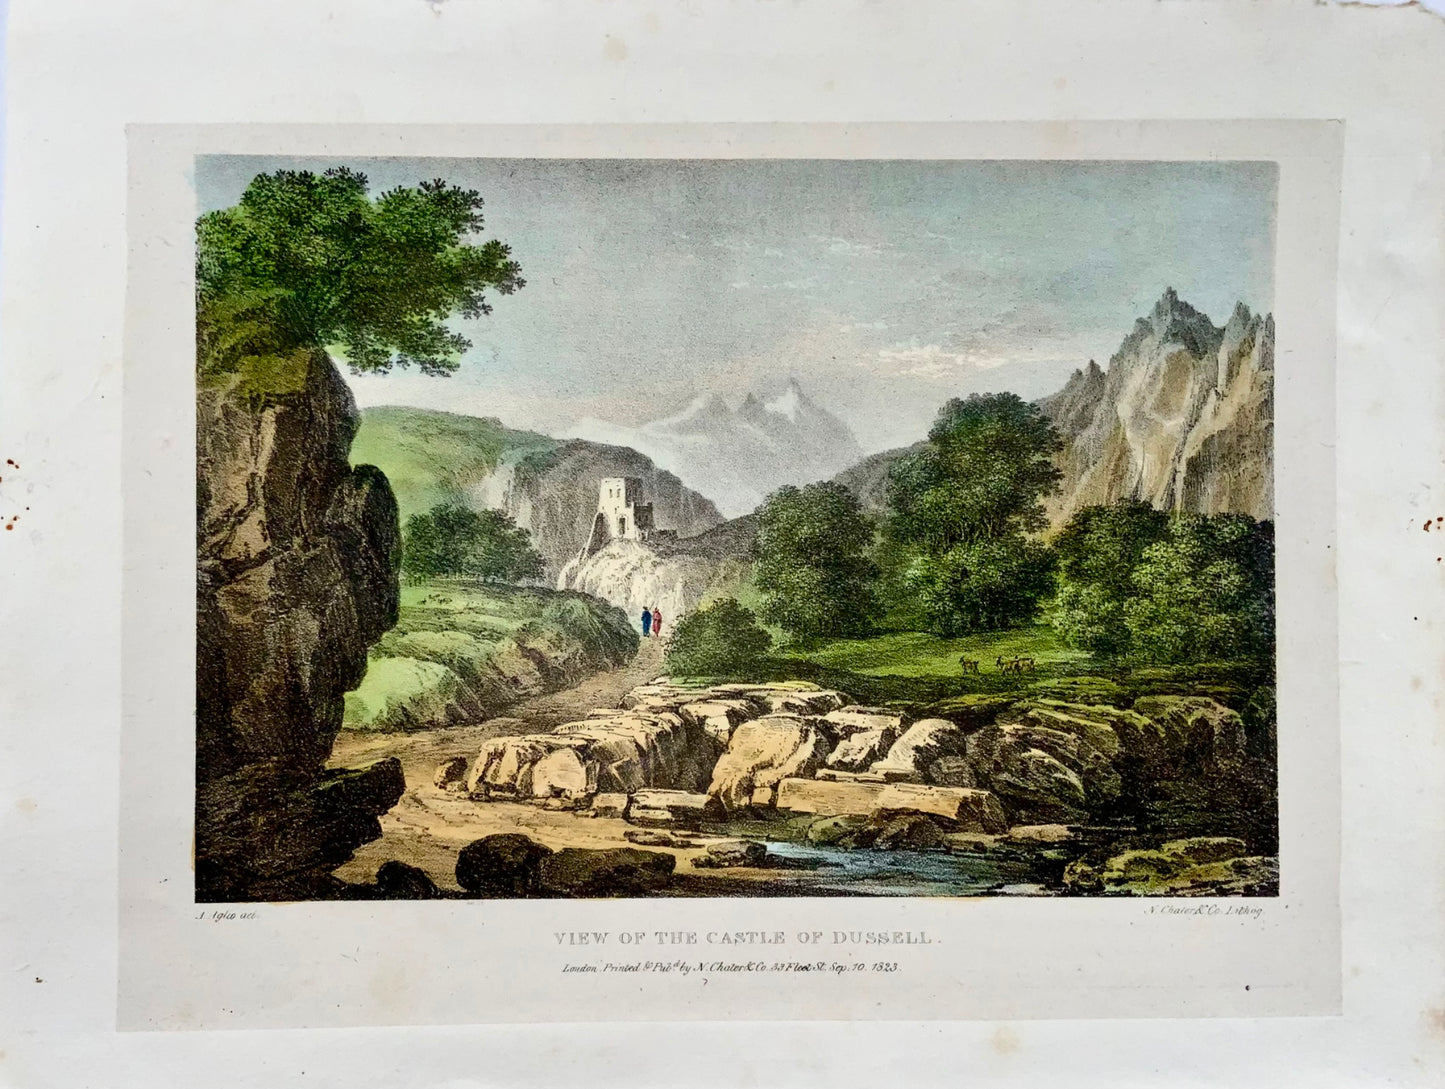 1823 Veduta del Castello di Dussell, Germania, Agostino Aglio, litografia, paesaggio